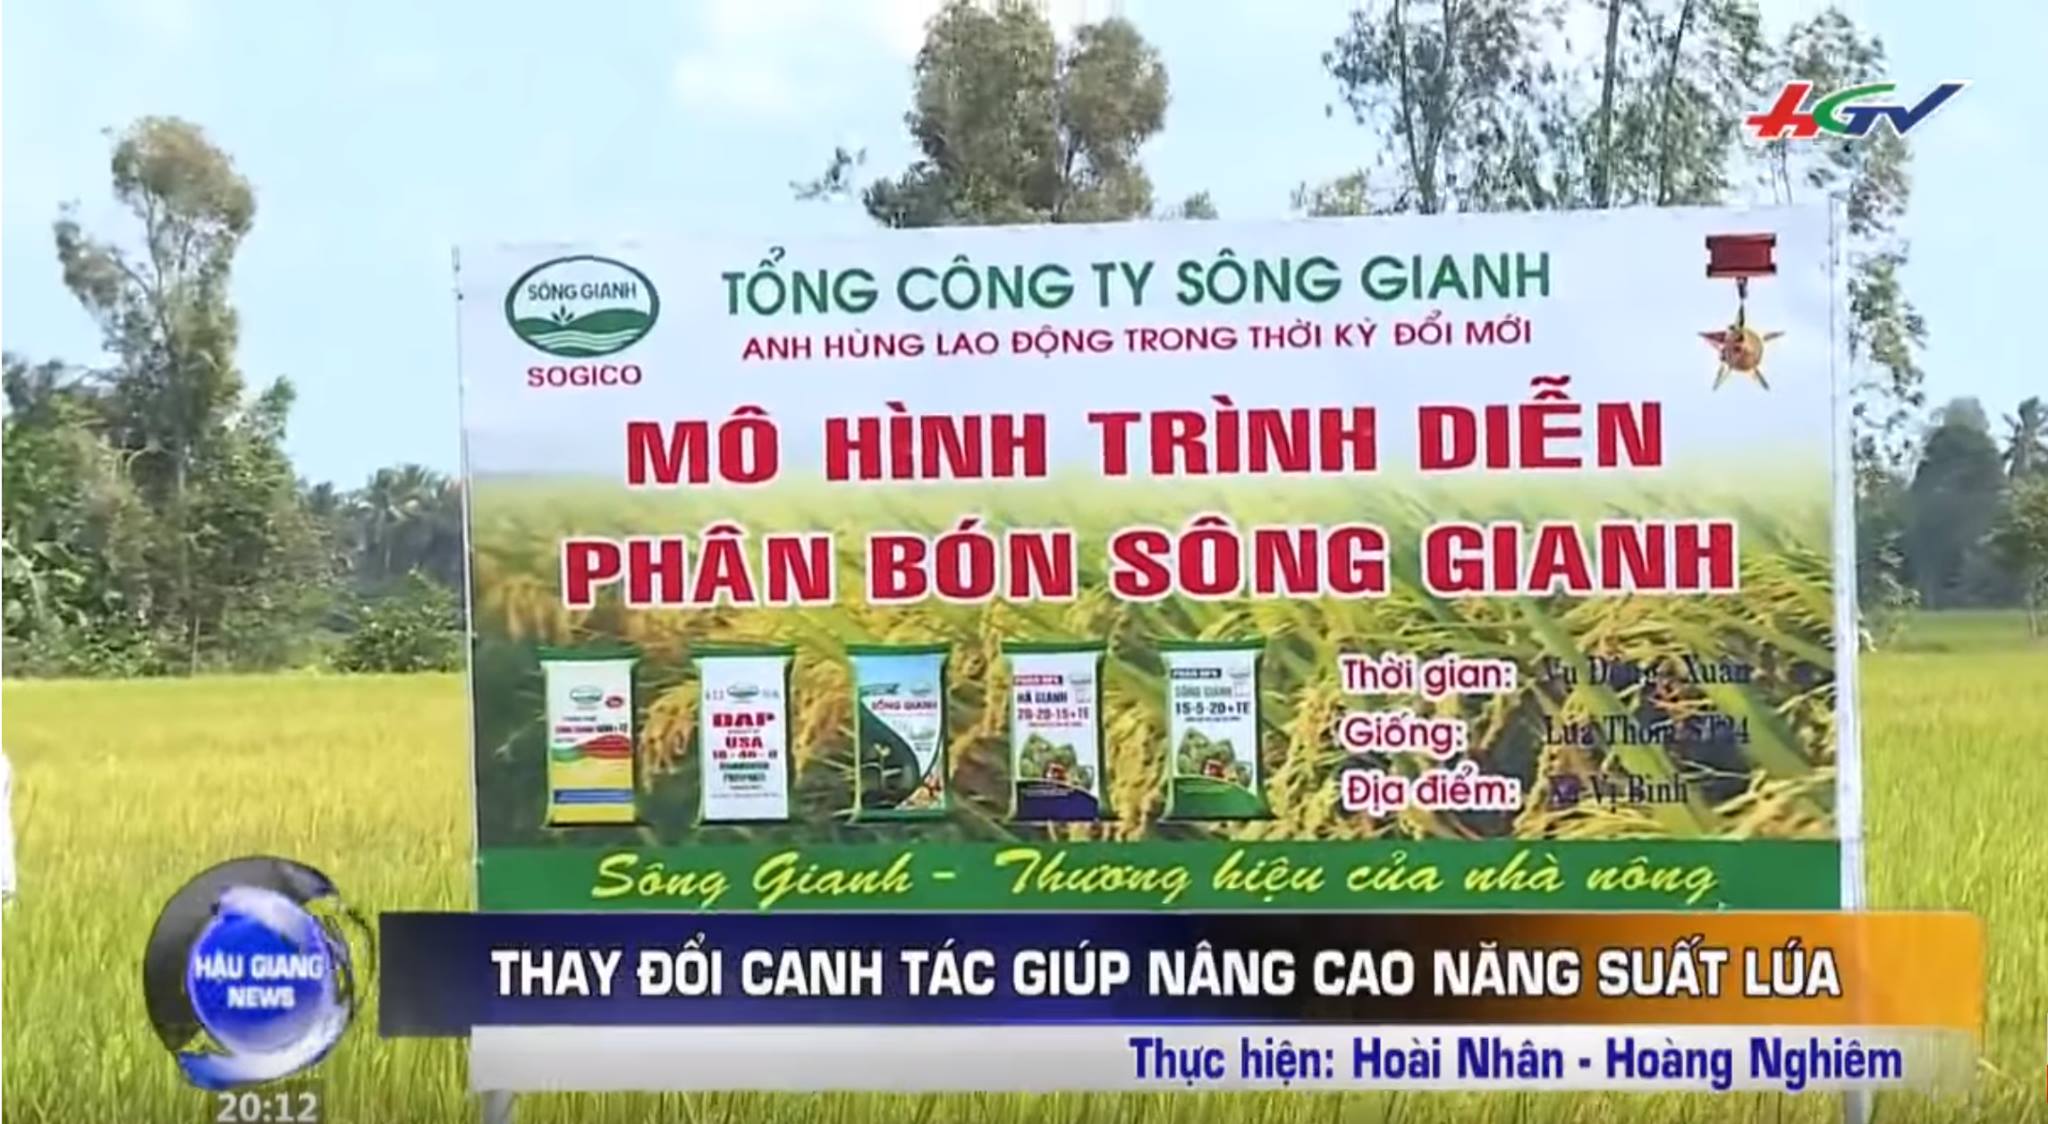 Tổng công ty Sông Gianh - CN T.p Hồ Chí Minh - Bình Dương thực hiện thành công mô hình trình diễn trên cây lúa ở Hậu Giang